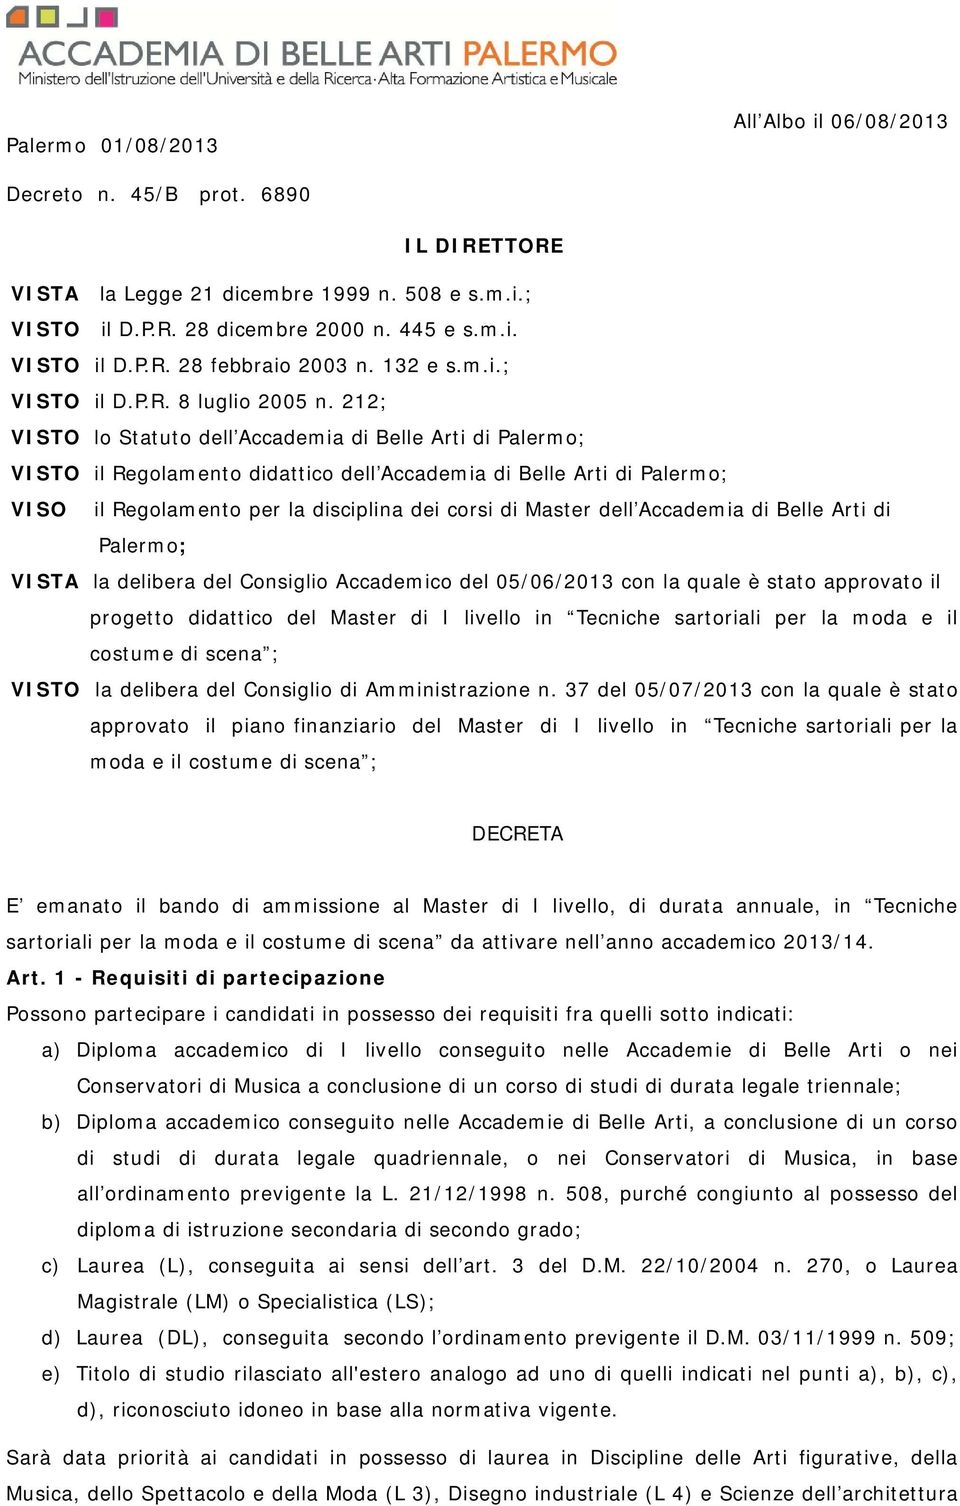 212; VISTO lo Statuto dell Accademia di Belle Arti di Palermo; VISTO il Regolamento didattico dell Accademia di Belle Arti di Palermo; VISO il Regolamento per la disciplina dei corsi di Master dell